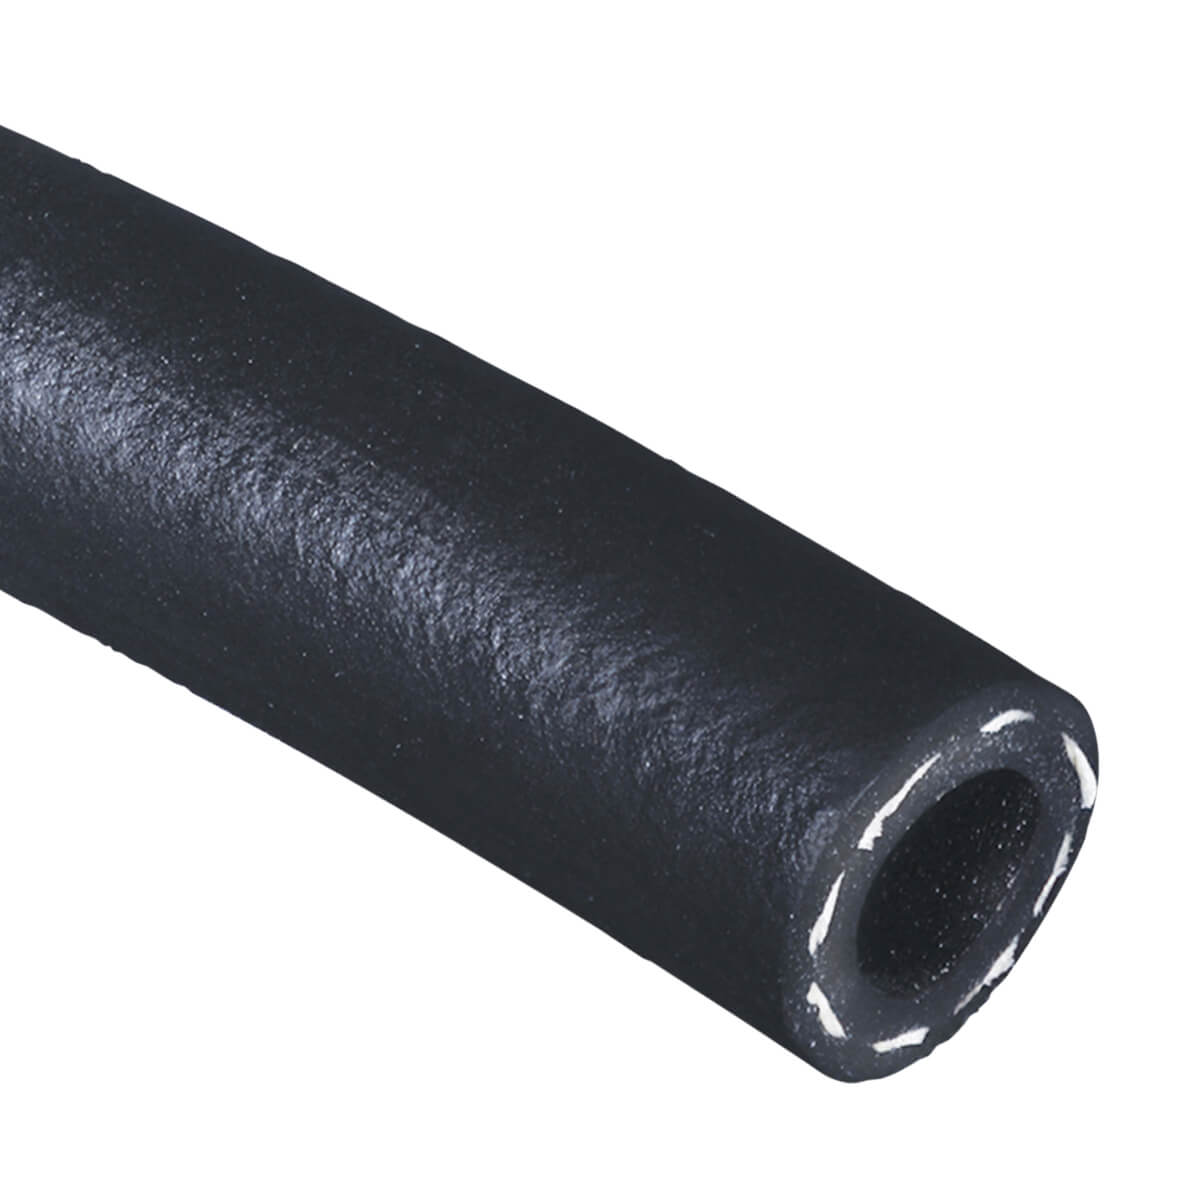 Black 200 PSI Multipurpose - AG 200 - Air & Water Hose - 5/8-in - Price Per Ft